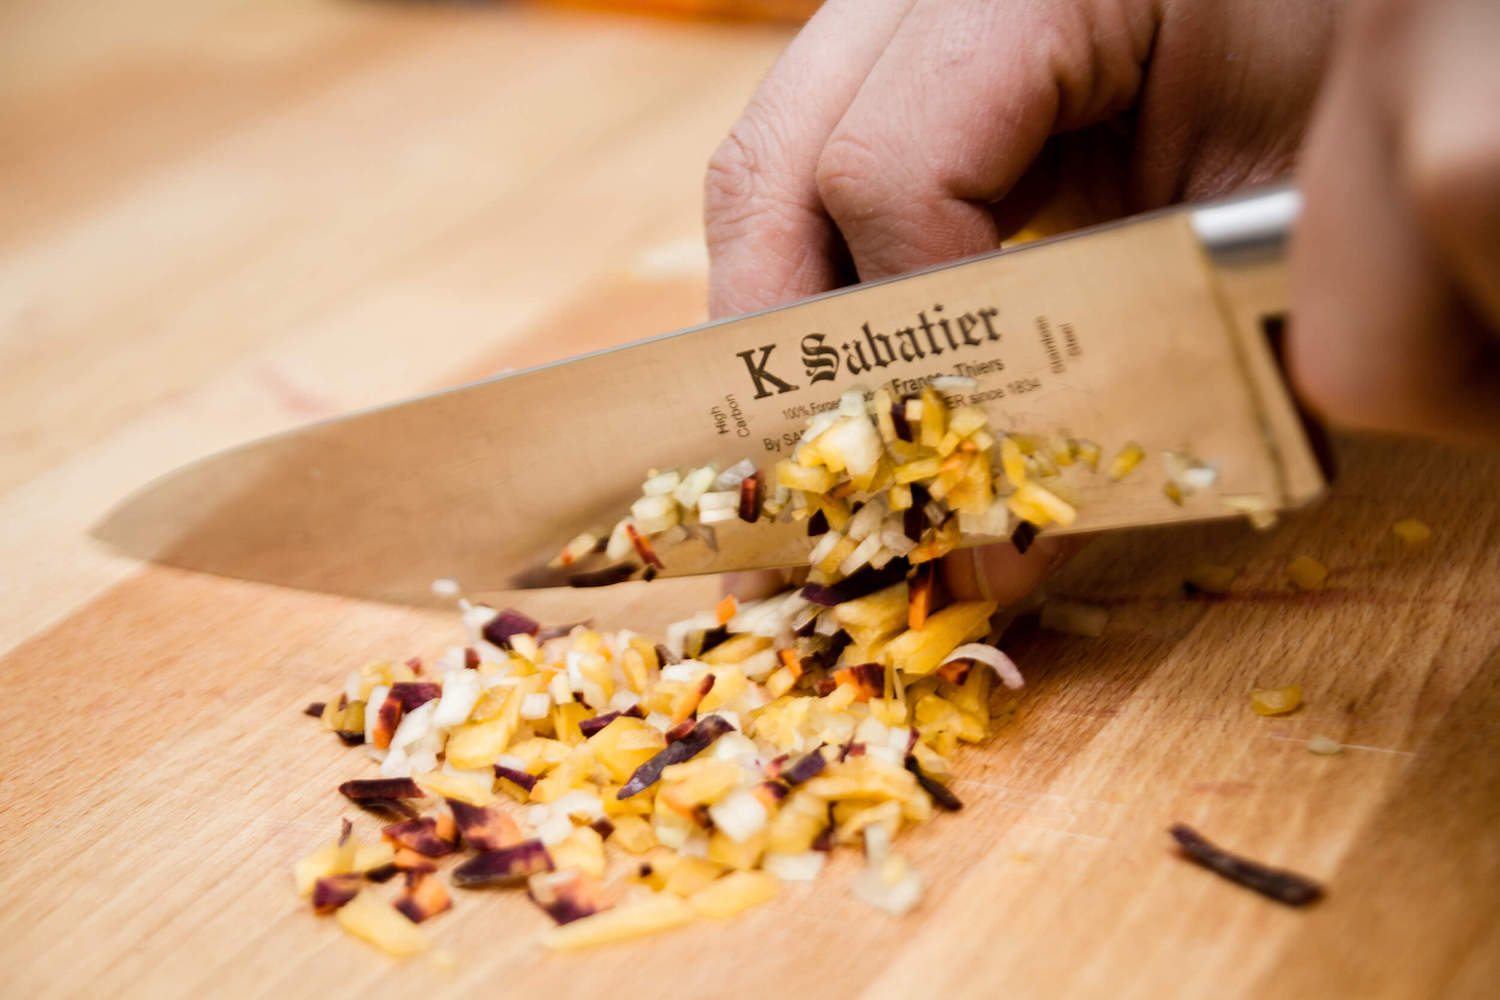 Sabatier Chef Knife